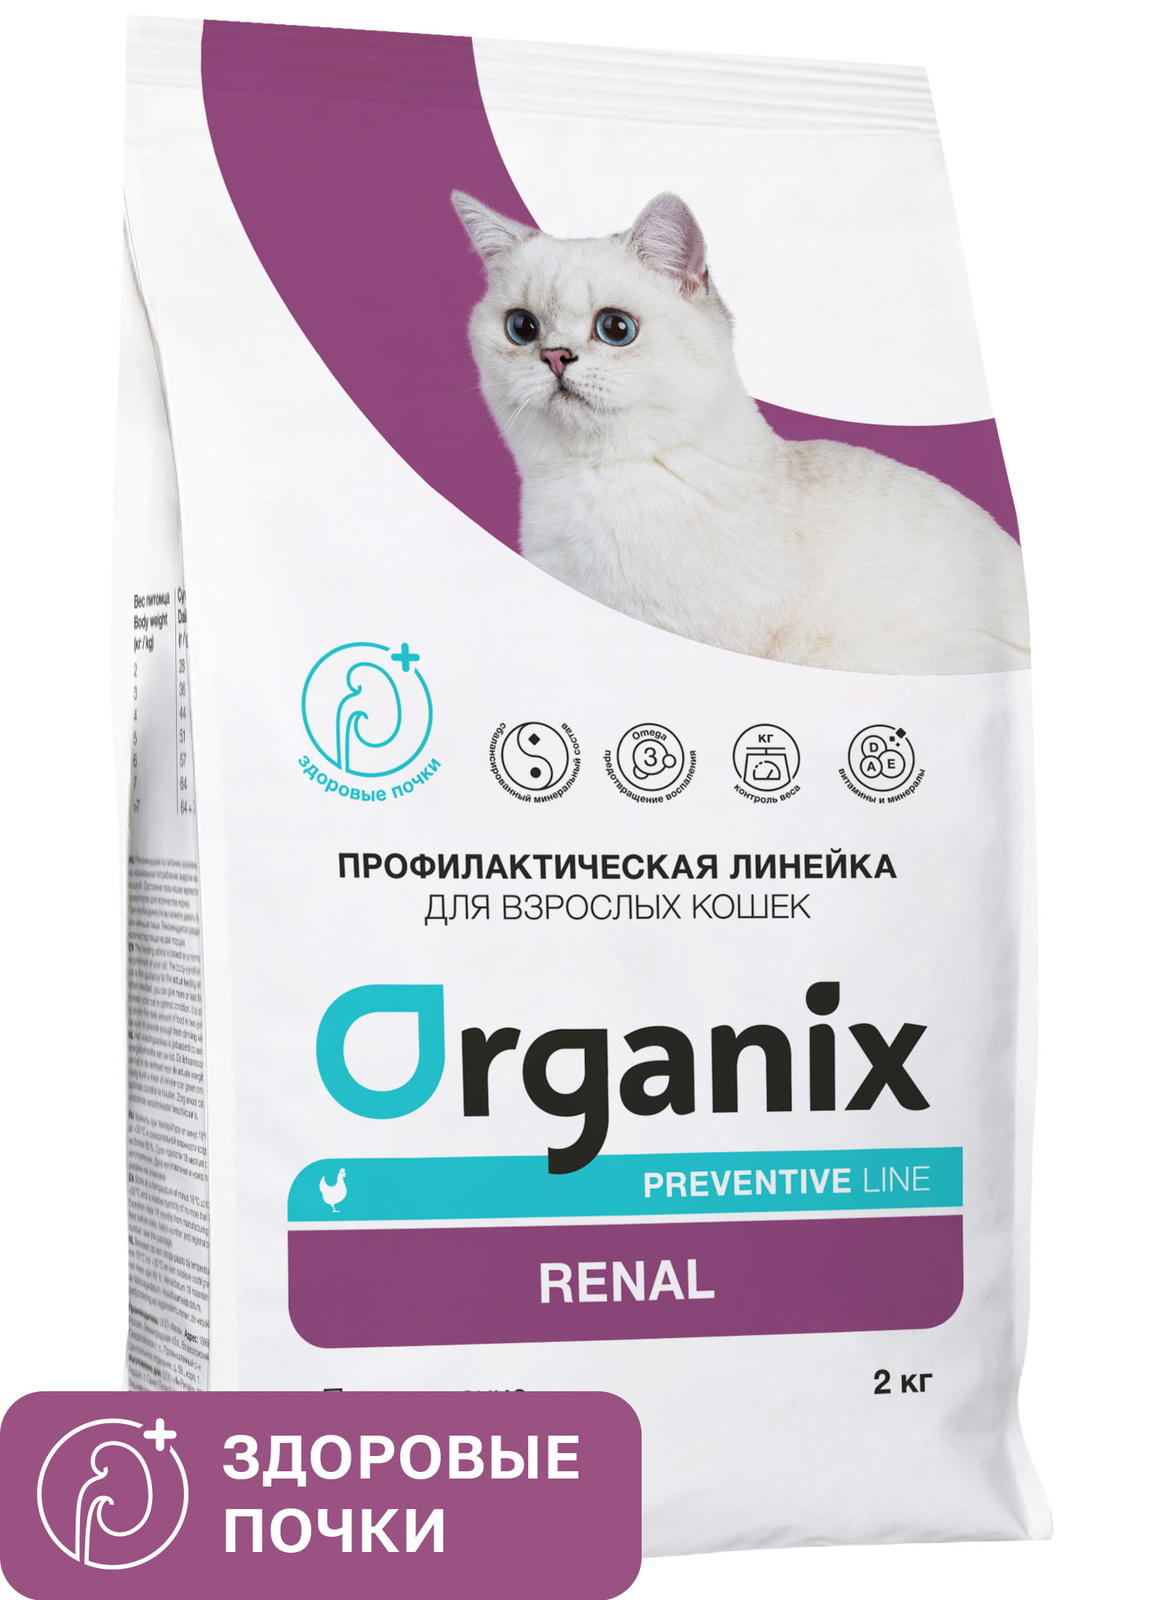 Organix Preventive Line Organix Preventive Line renal сухой корм для кошек Поддержание здоровья почек (2 кг) organix organix сухой корм для кошек с курочкой 7 5 кг